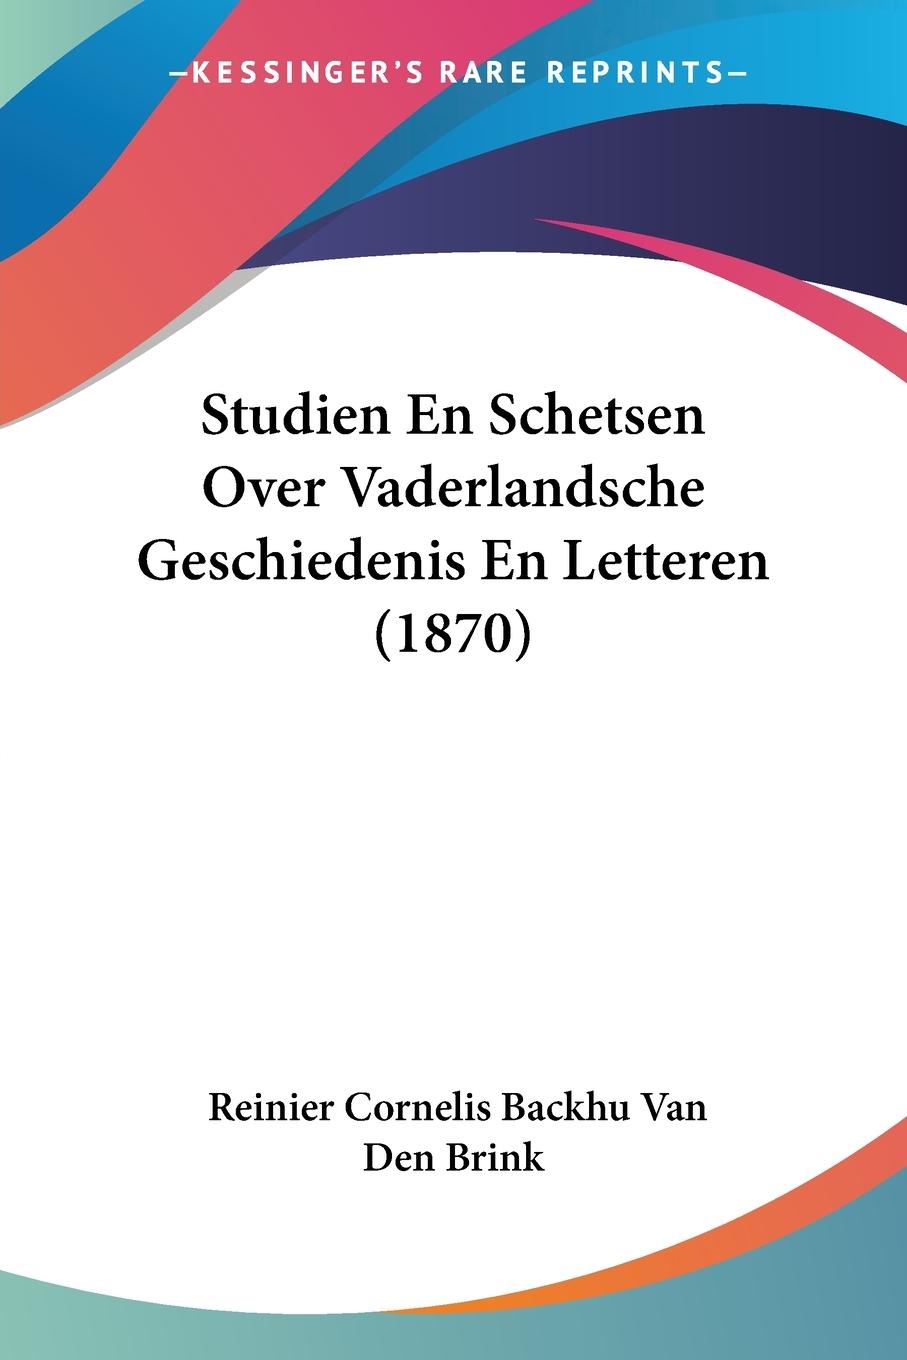 Studien En Schetsen Over Vaderlandsche Geschiedenis En Letteren (1870) - Brink, Reinier Cornelis Backhu van den